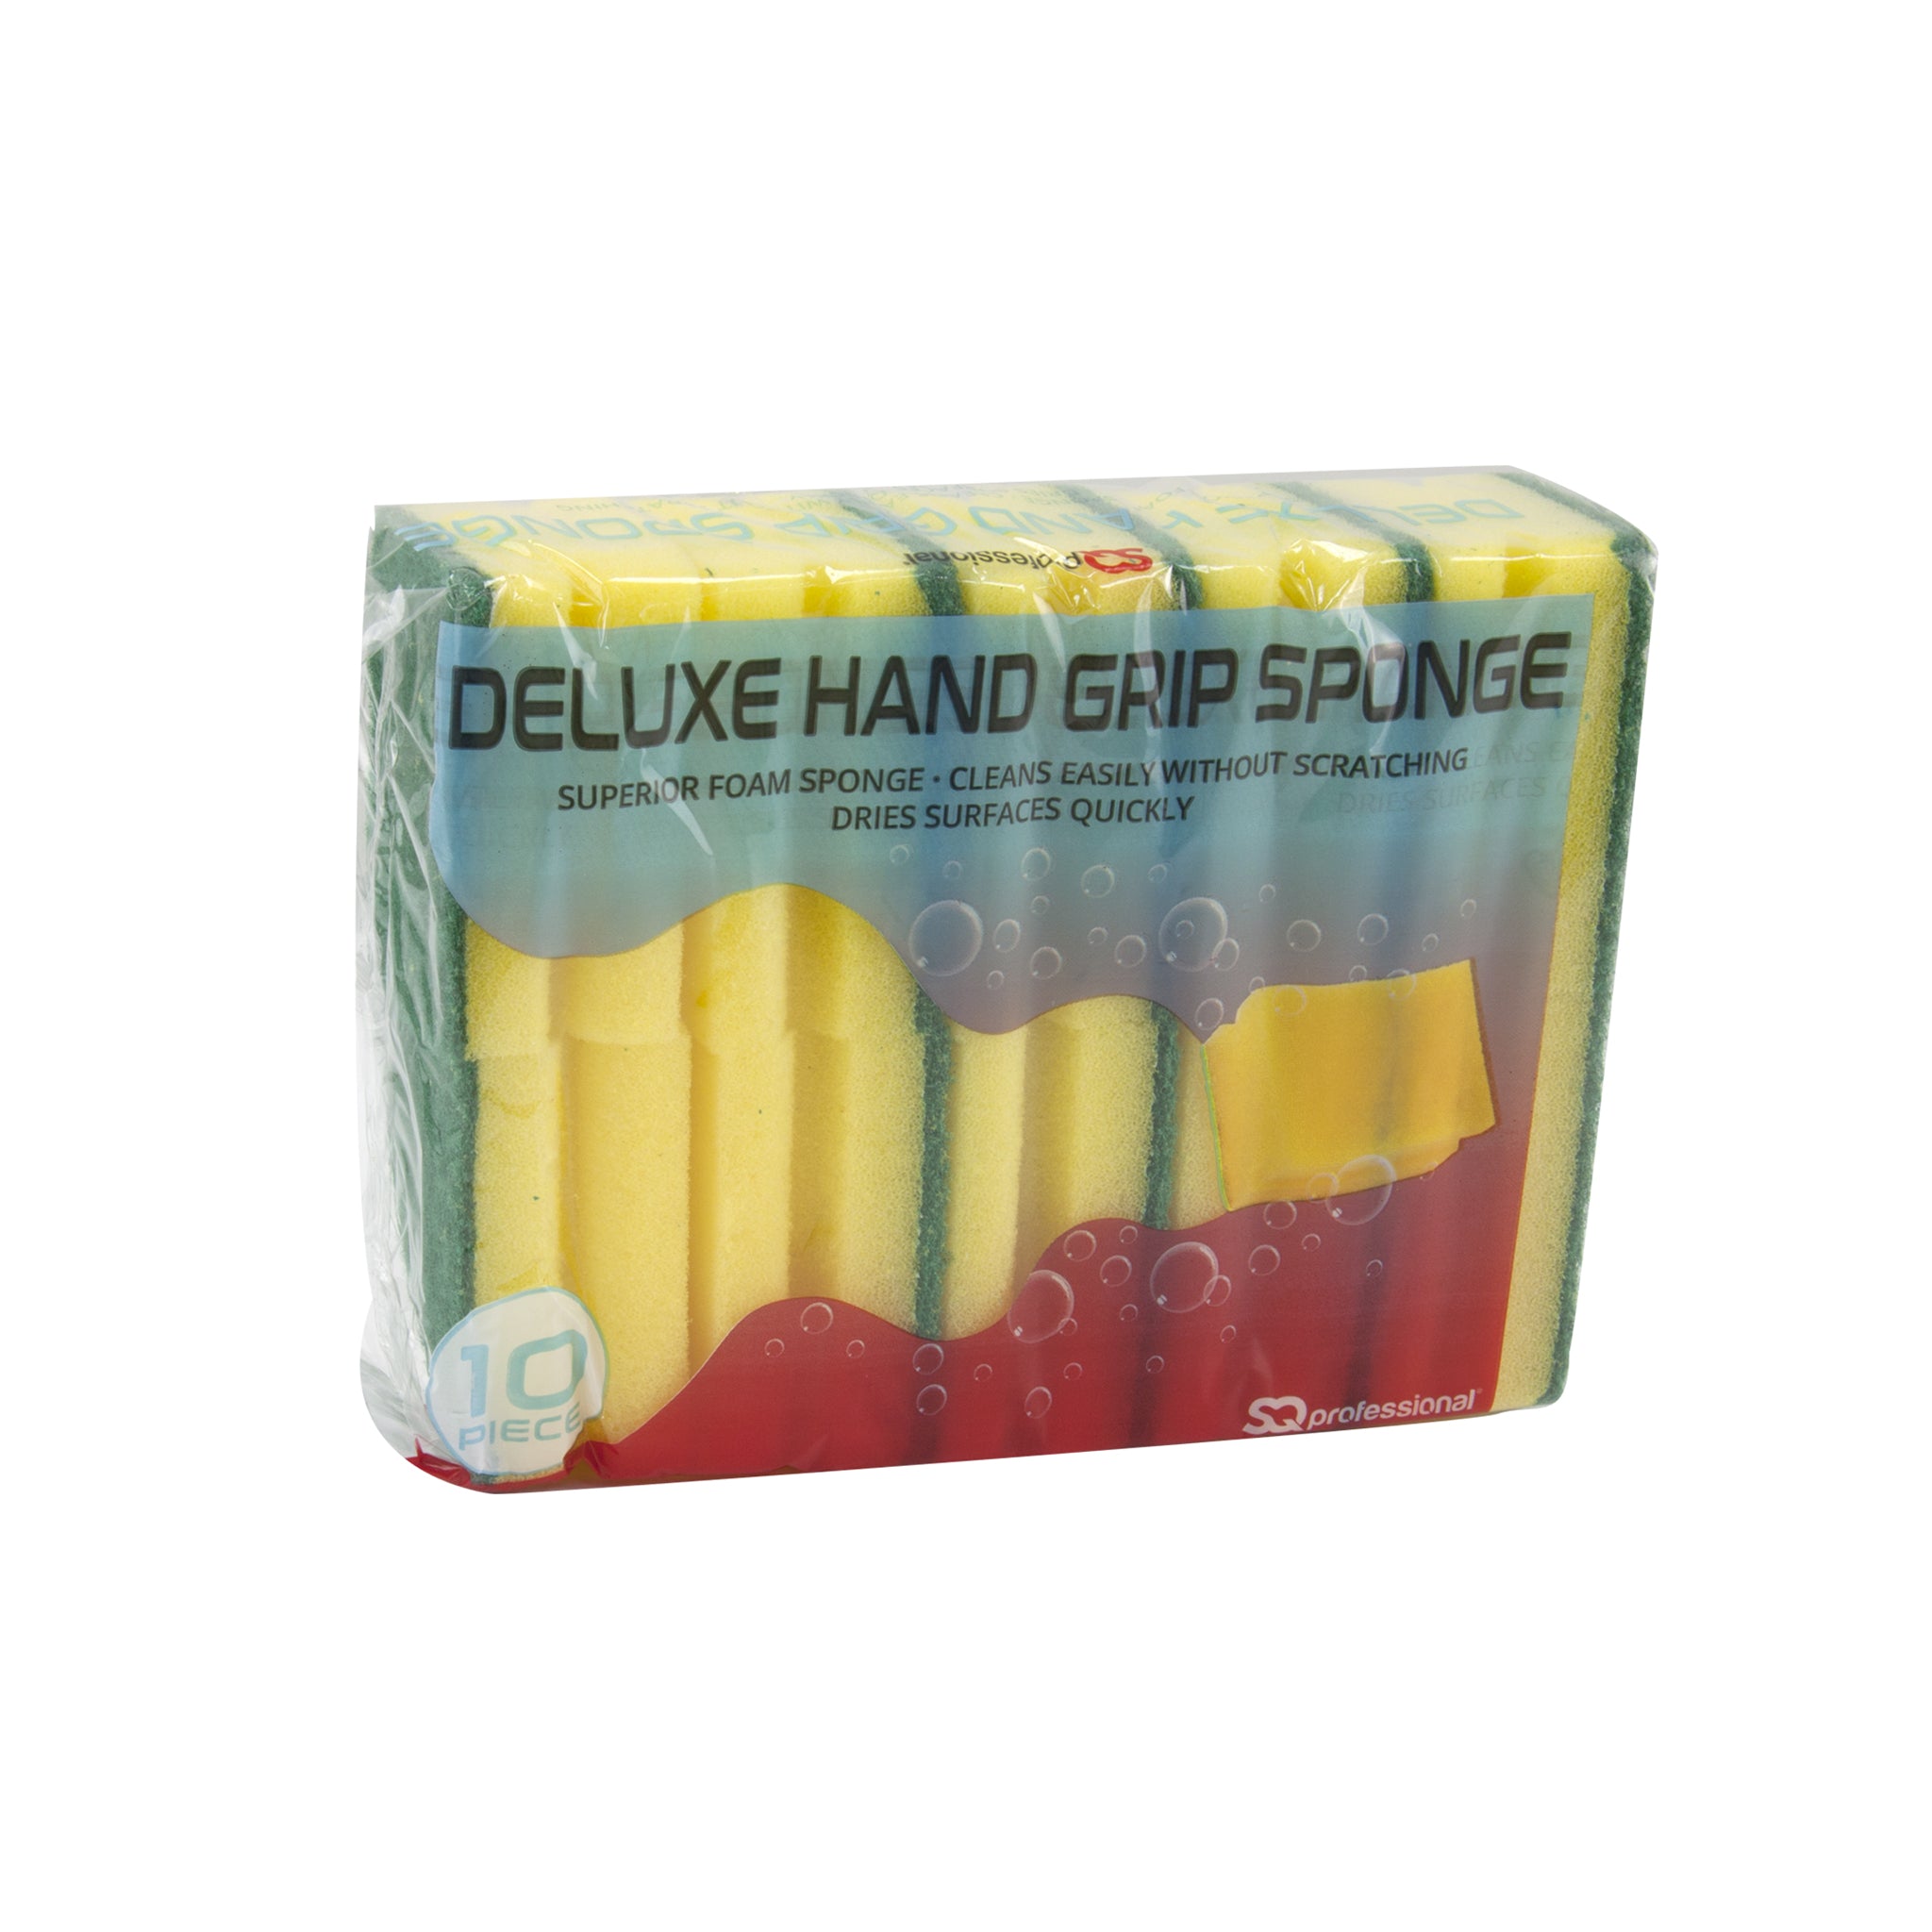 Deluxe Hand Grip Sponge - 10 Pc Set